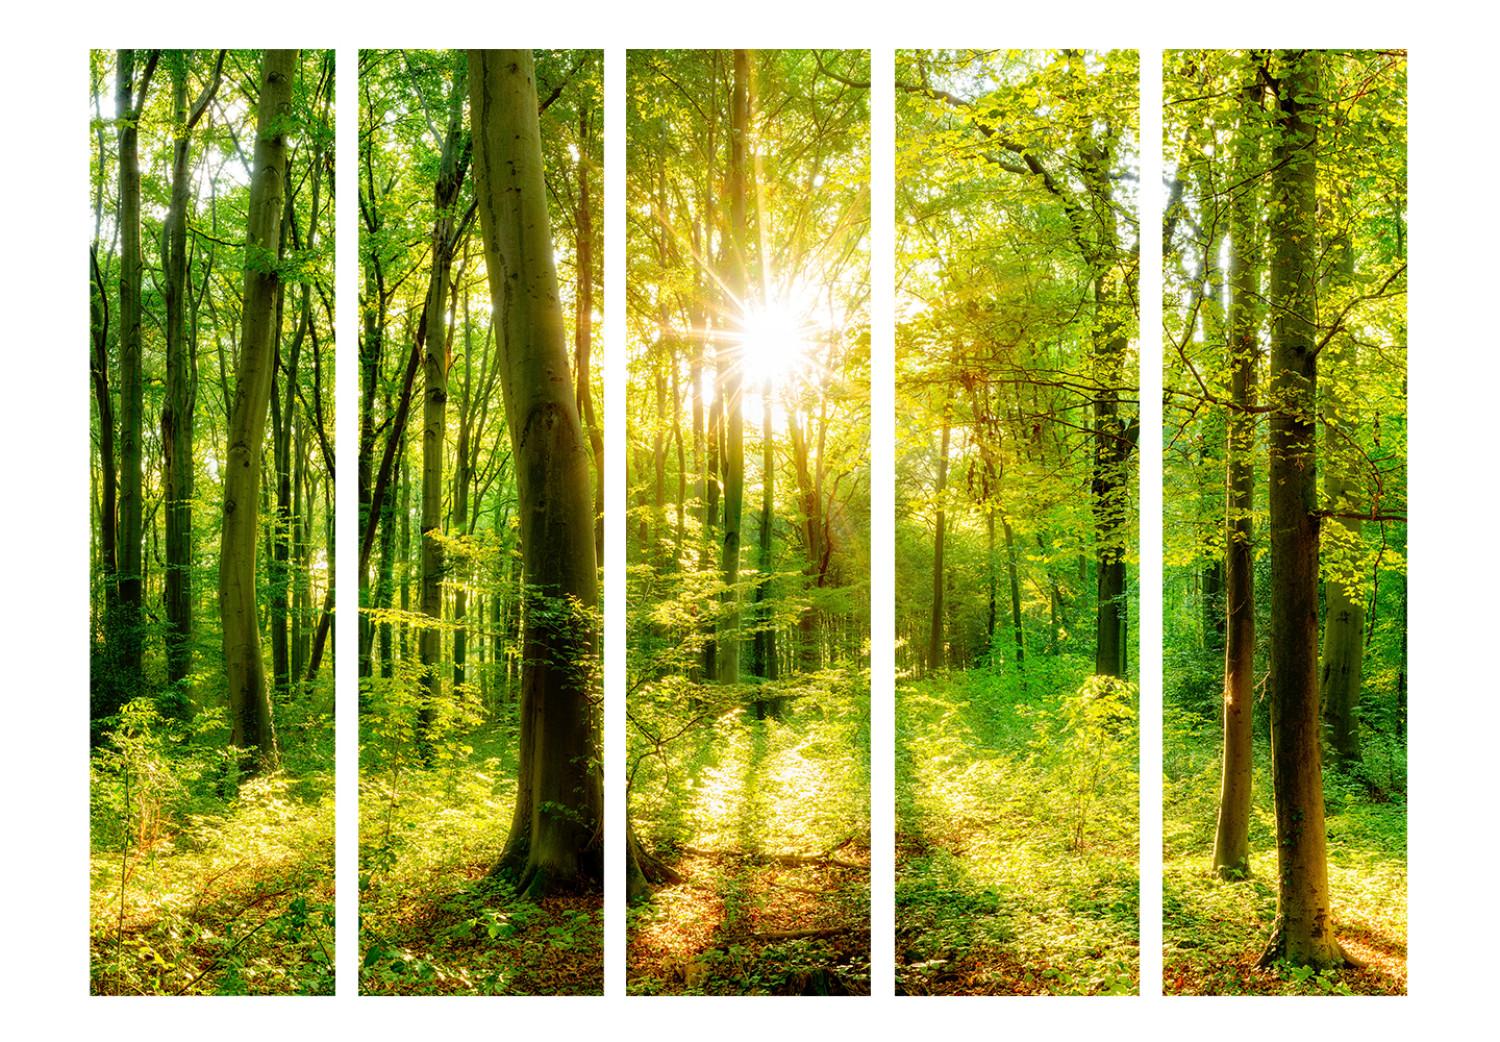 Biombo barato Rayos del bosque II - paisaje de vegetación en el bosque y luz solar